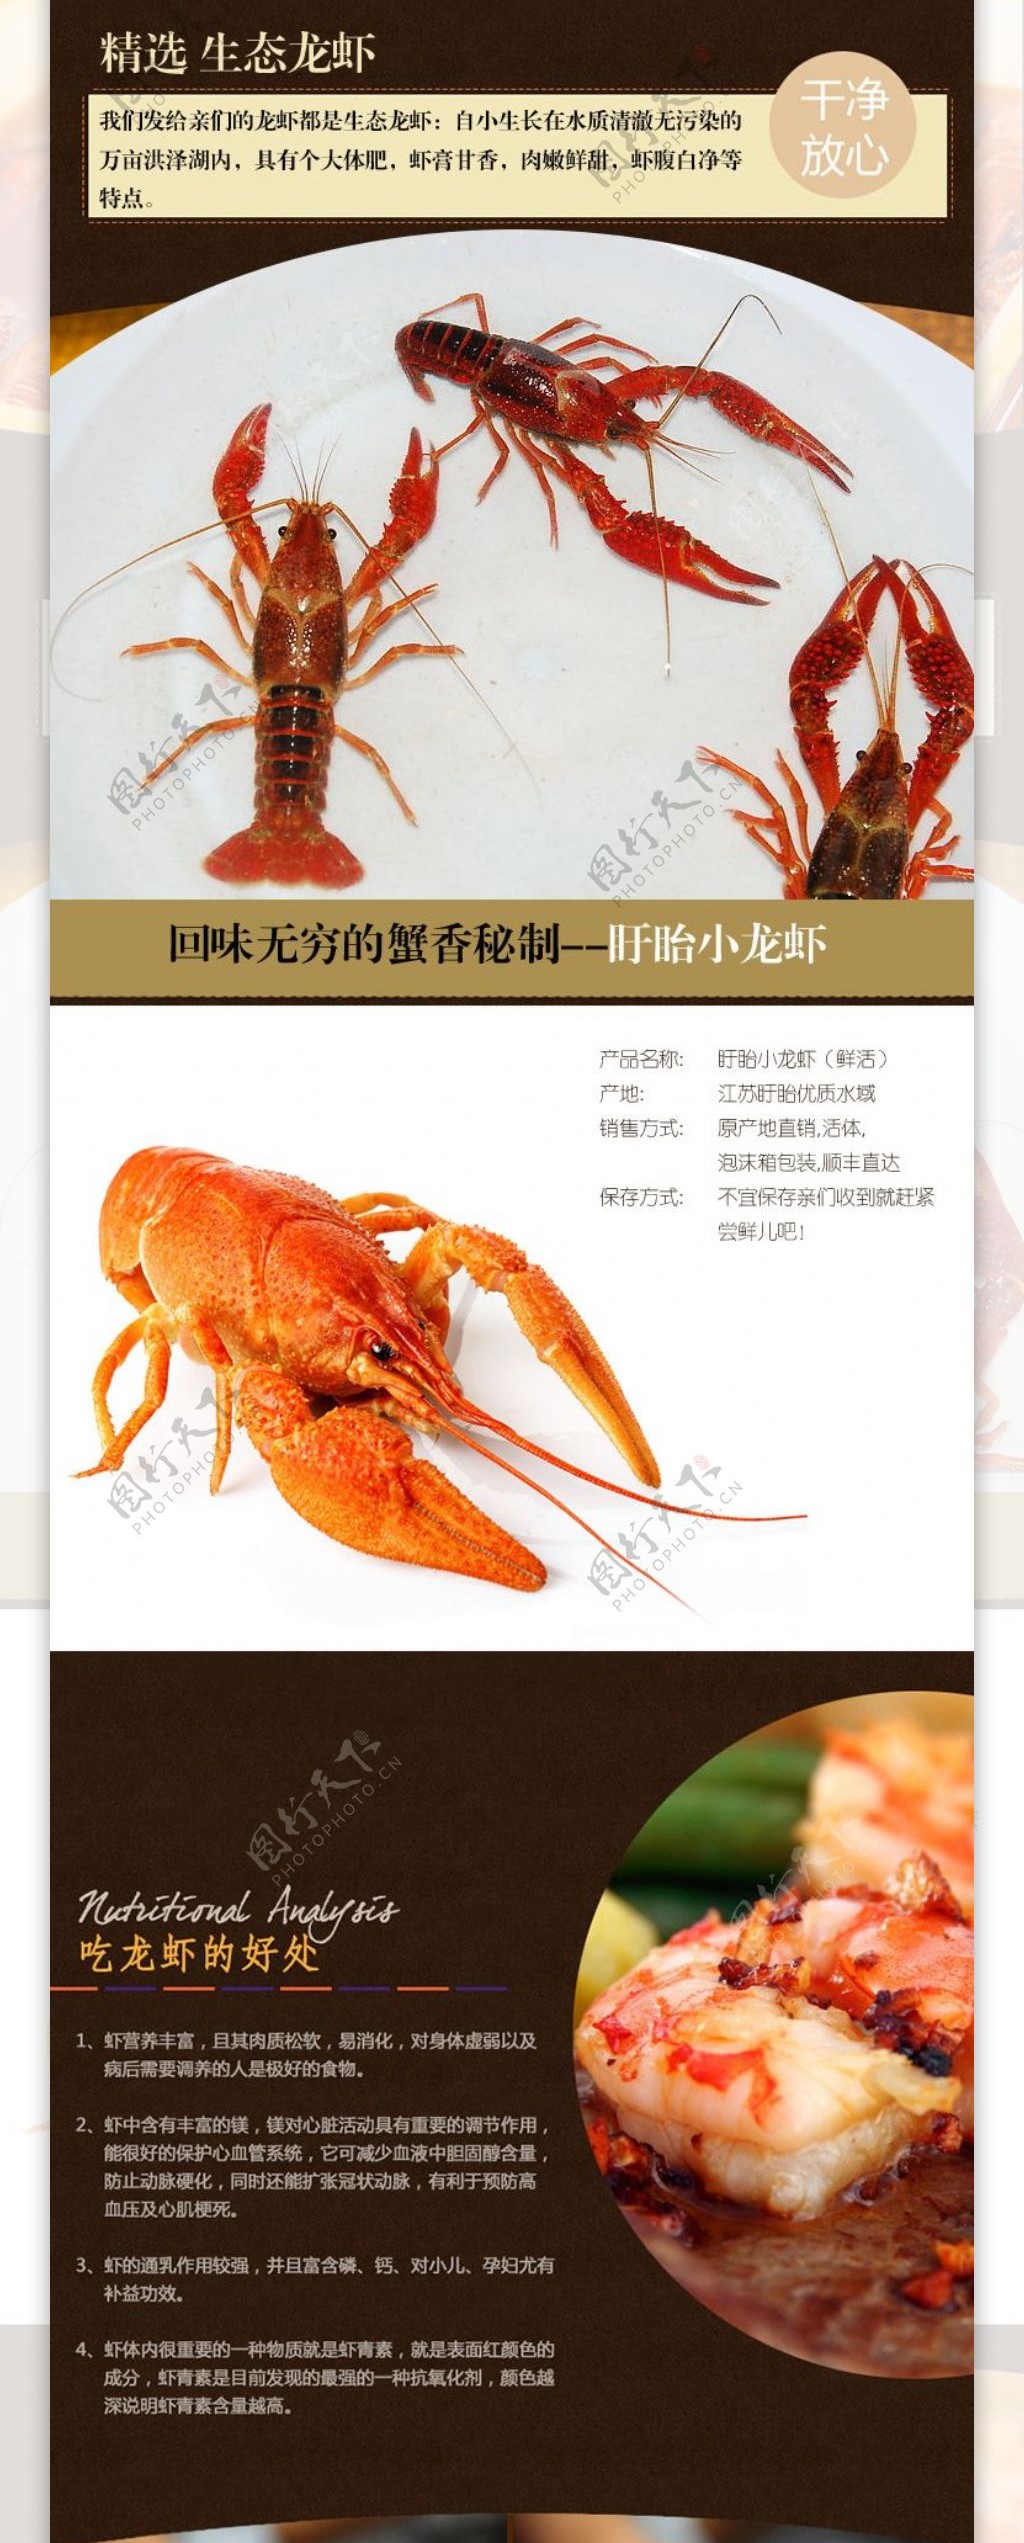 淘宝龙虾详情页设计模板PSD素材